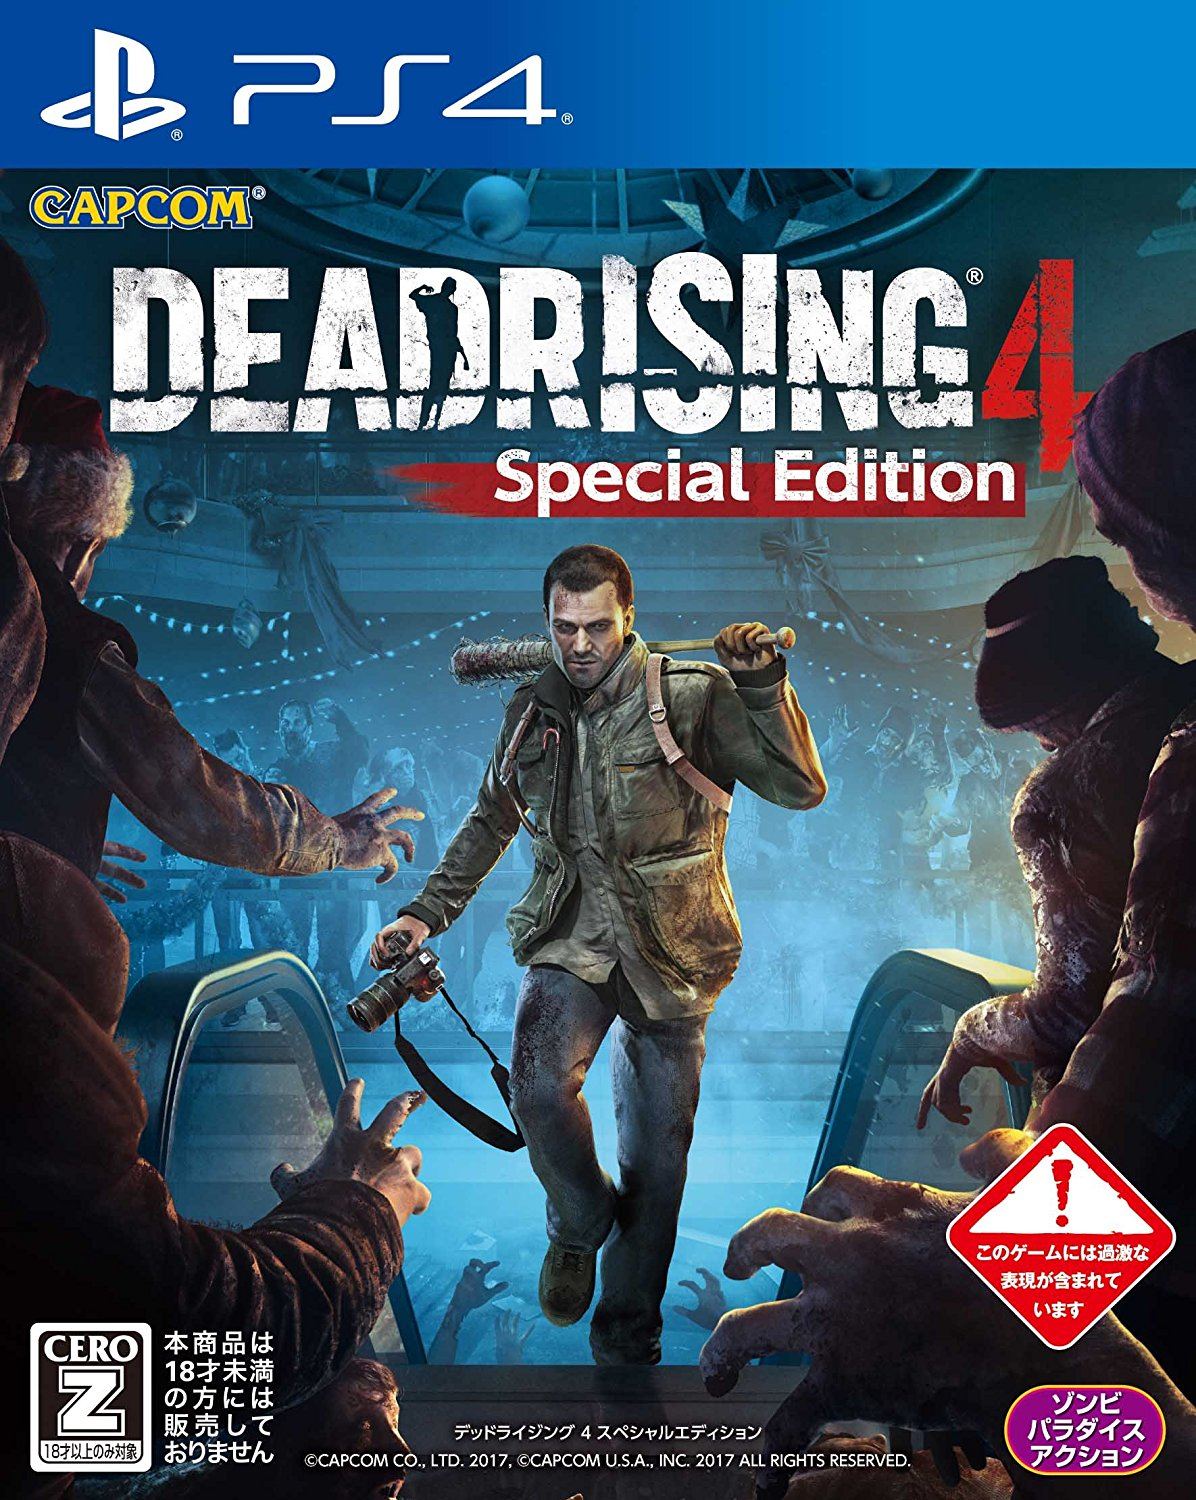 Dead Rising HD - PlayStation 4